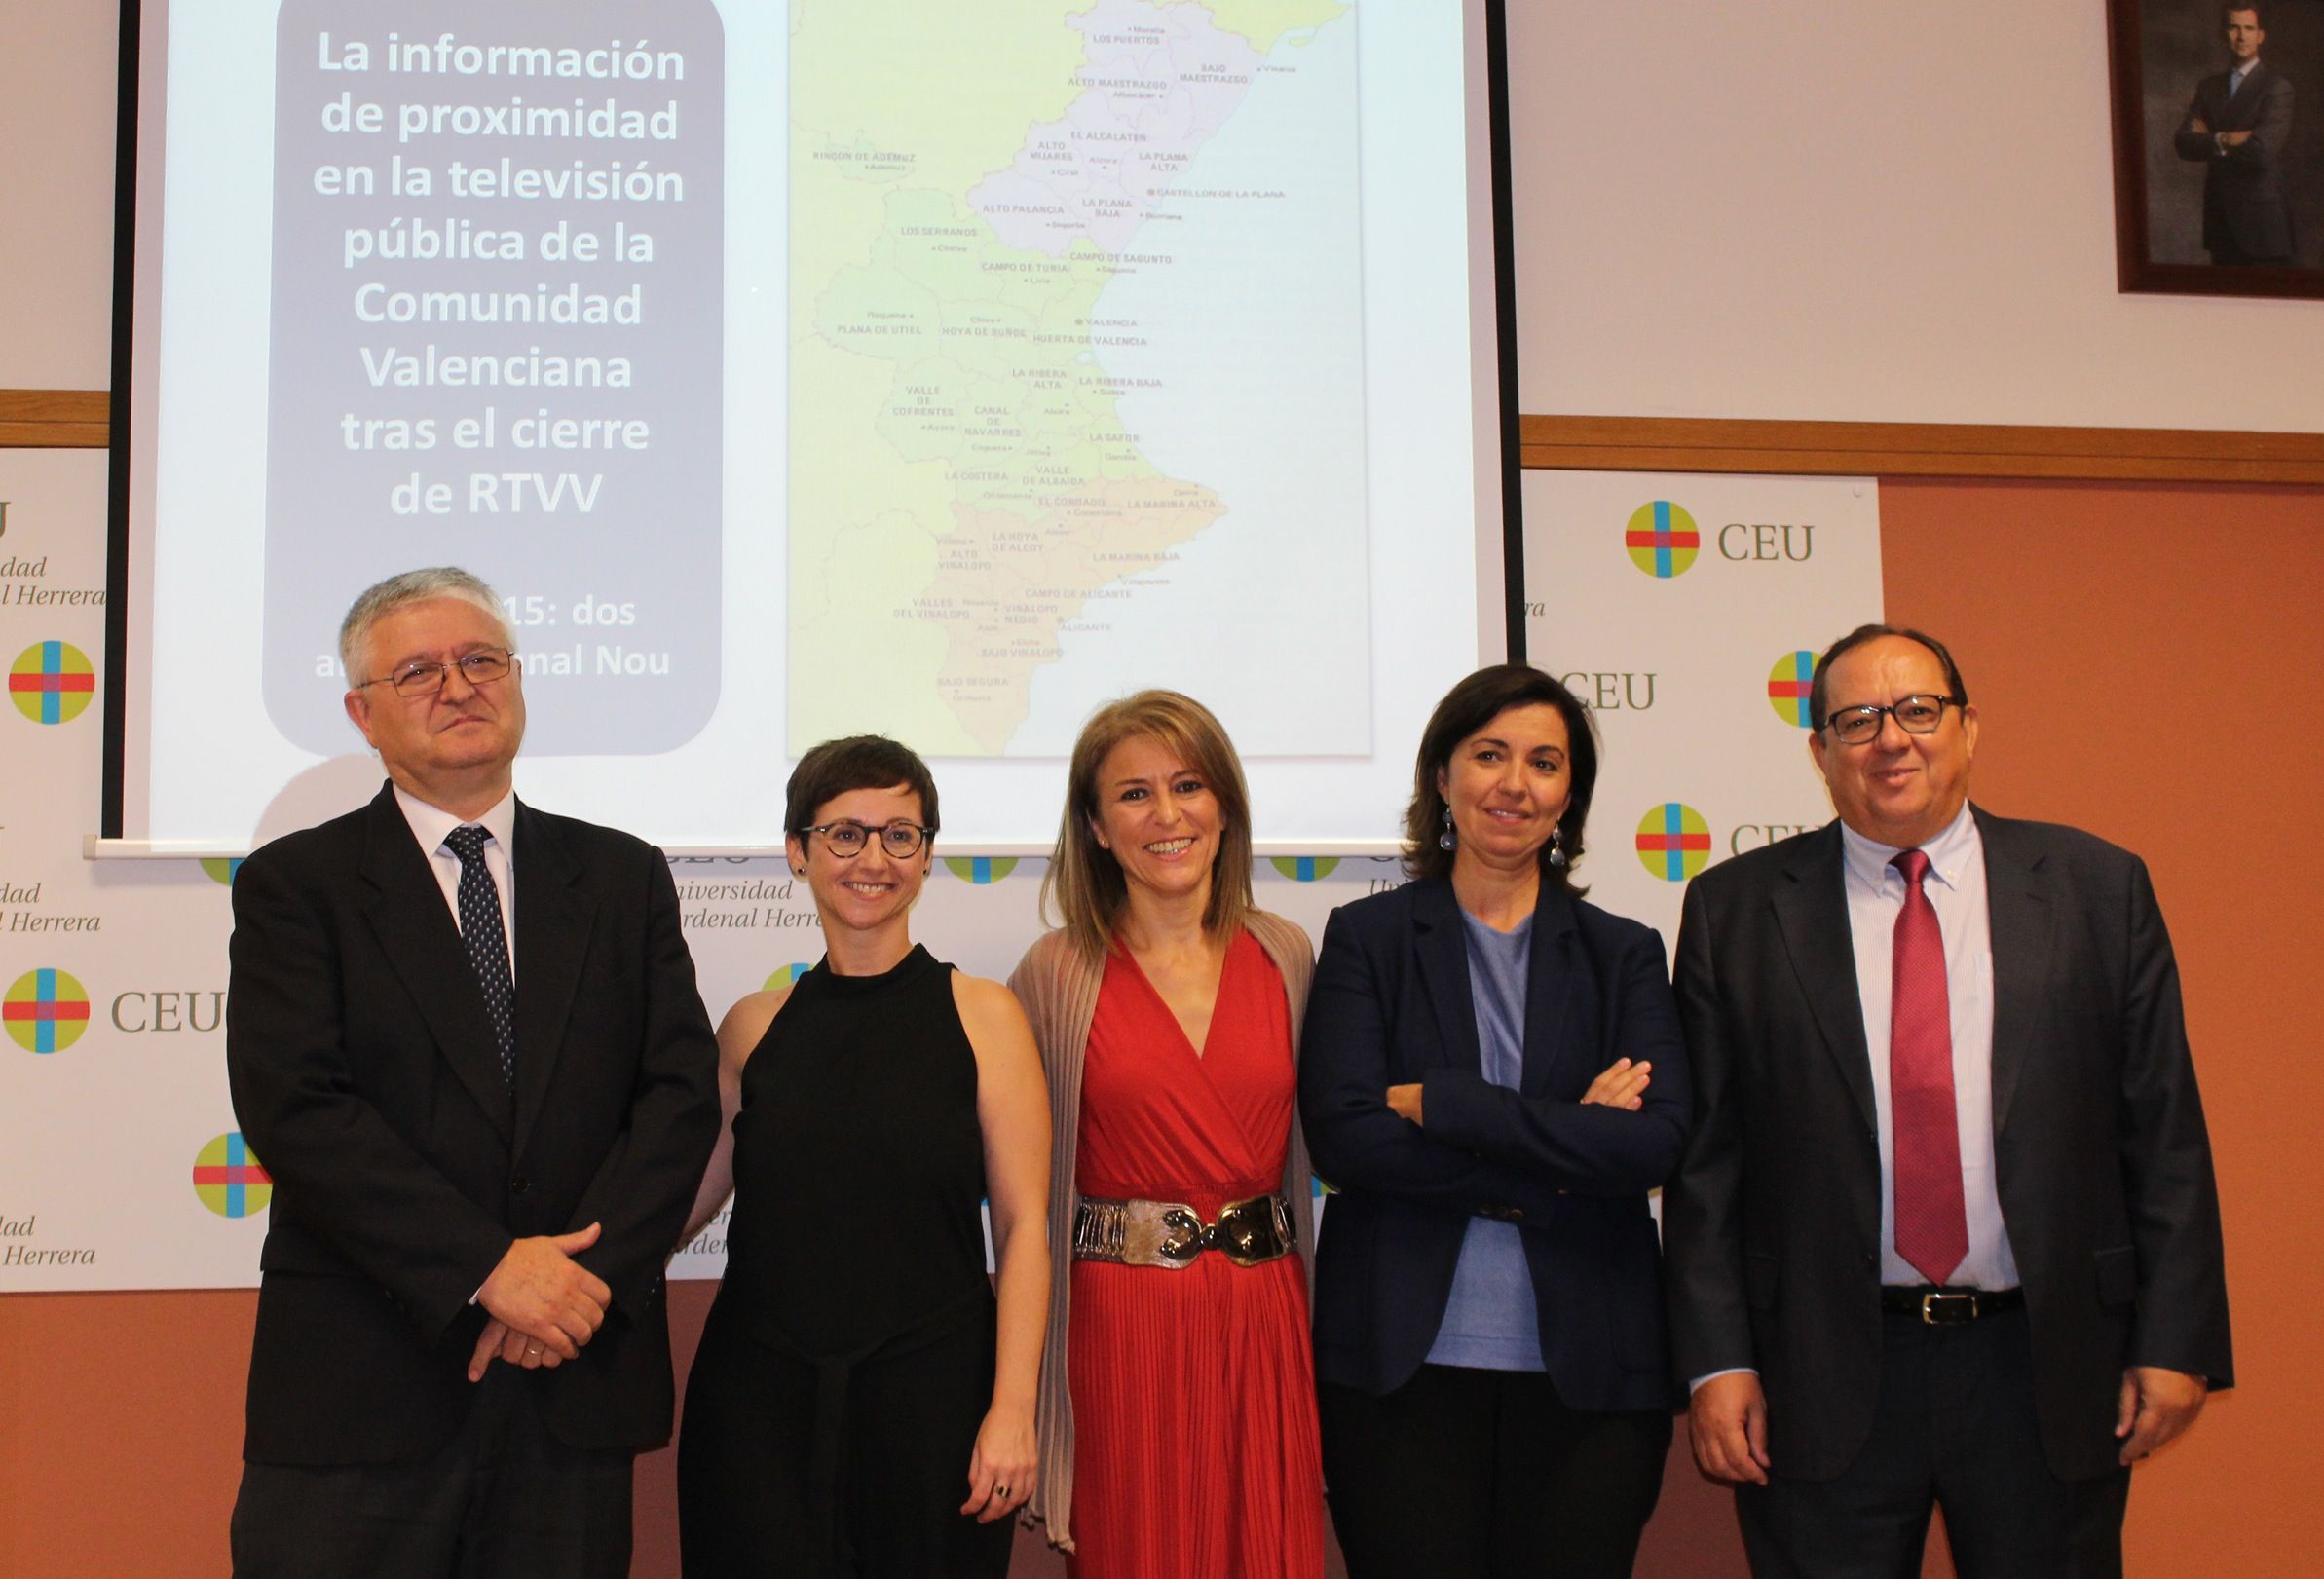 La periodista María José Escuder (segunda por la izq.), junto a los miembros del tribunal de su tesis doctoral y su director, tras la defensa en la CEU-UCH.